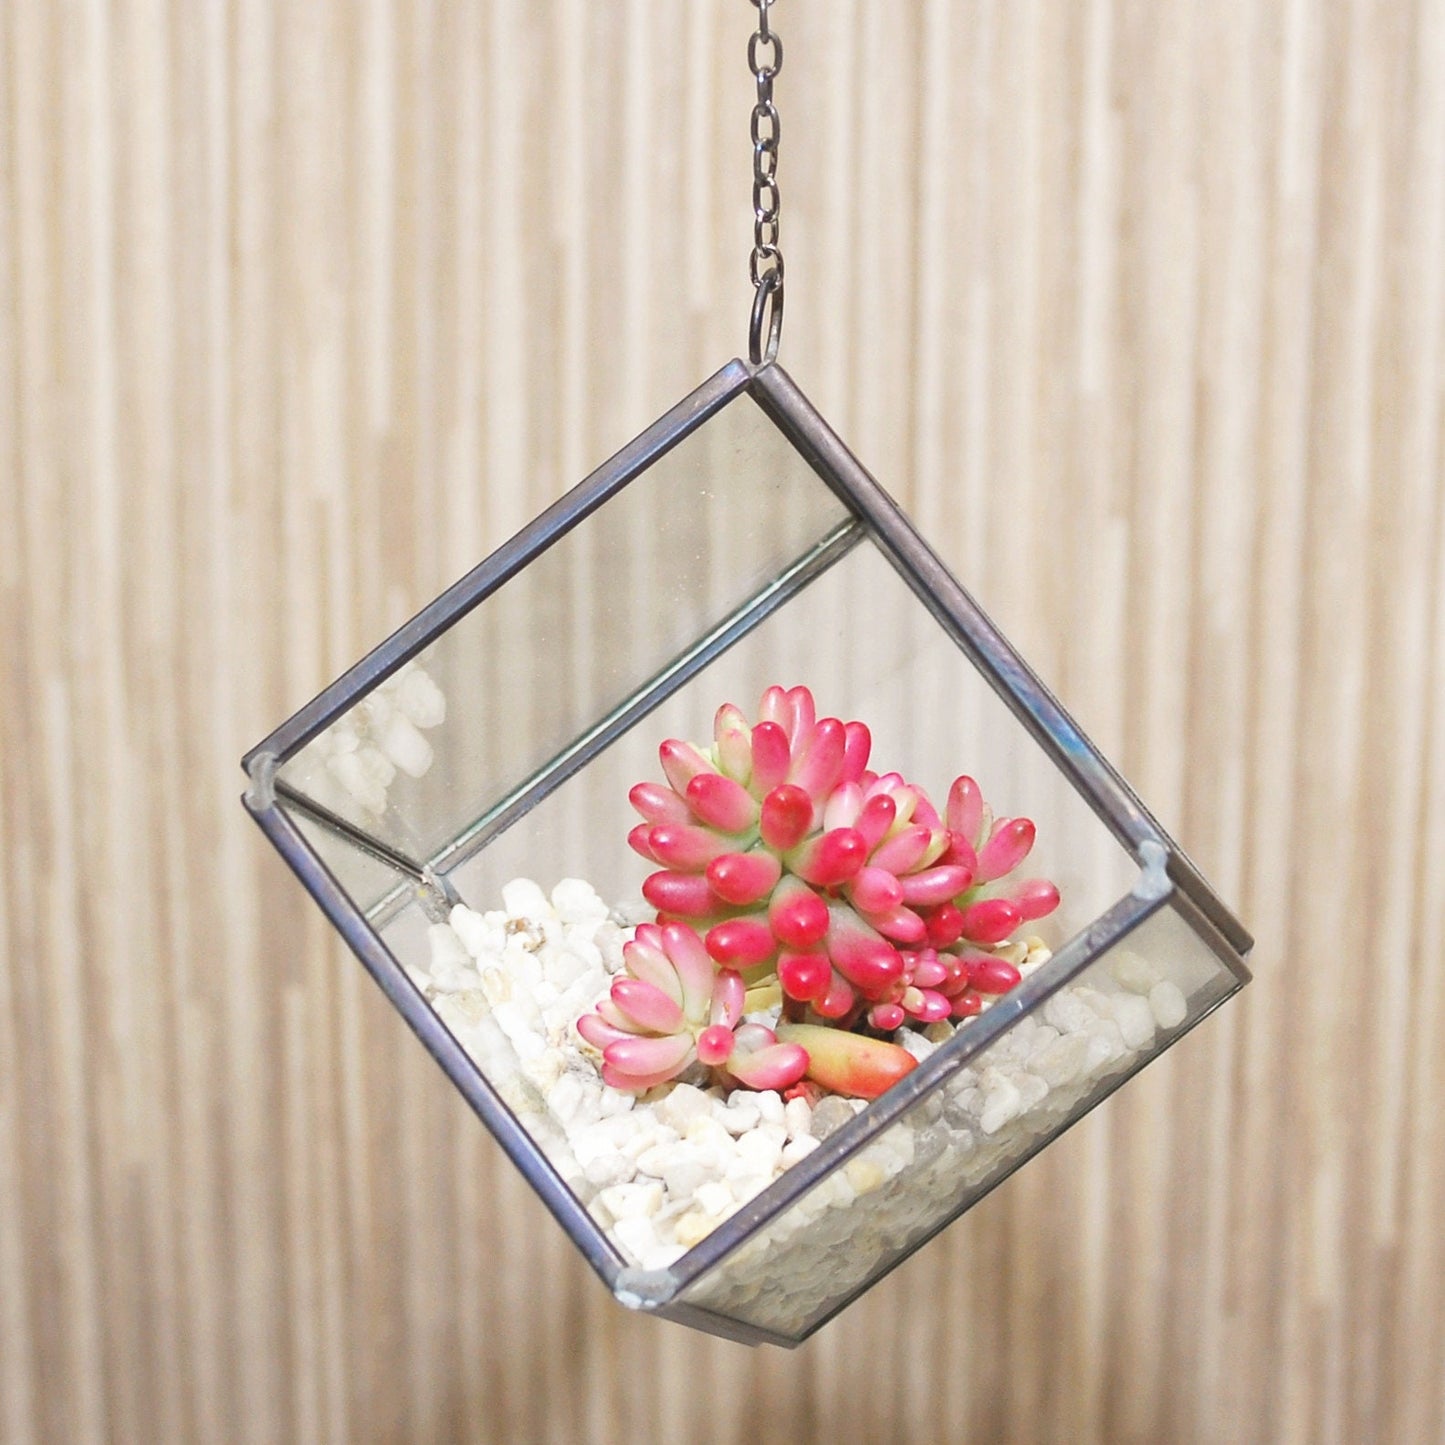 Succulent Terrarium Kit in a Hanging Cube Glass Vase